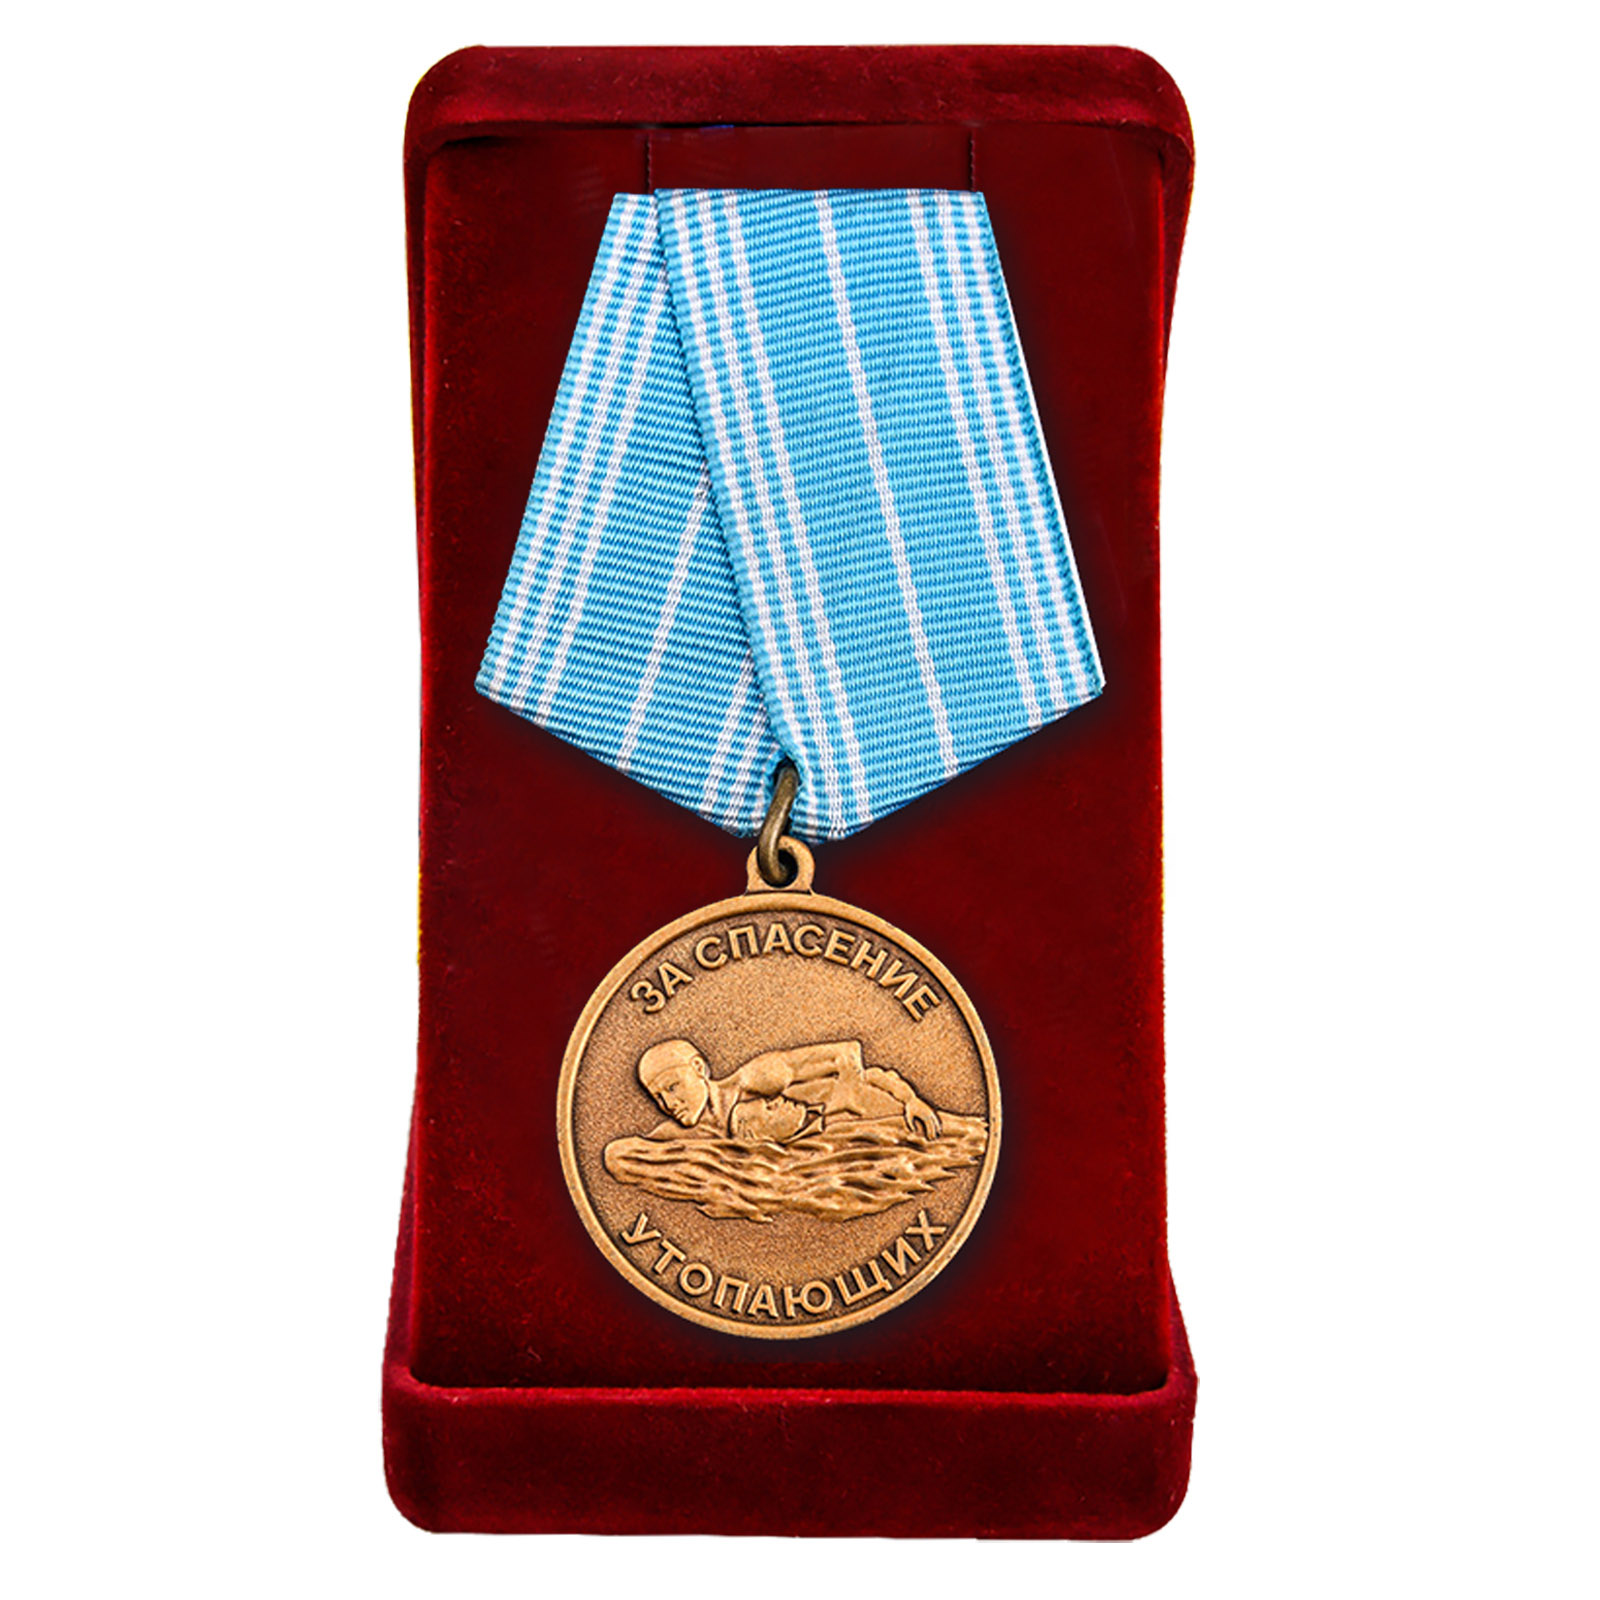 Муляж медали "За спасение утопающих" СССР